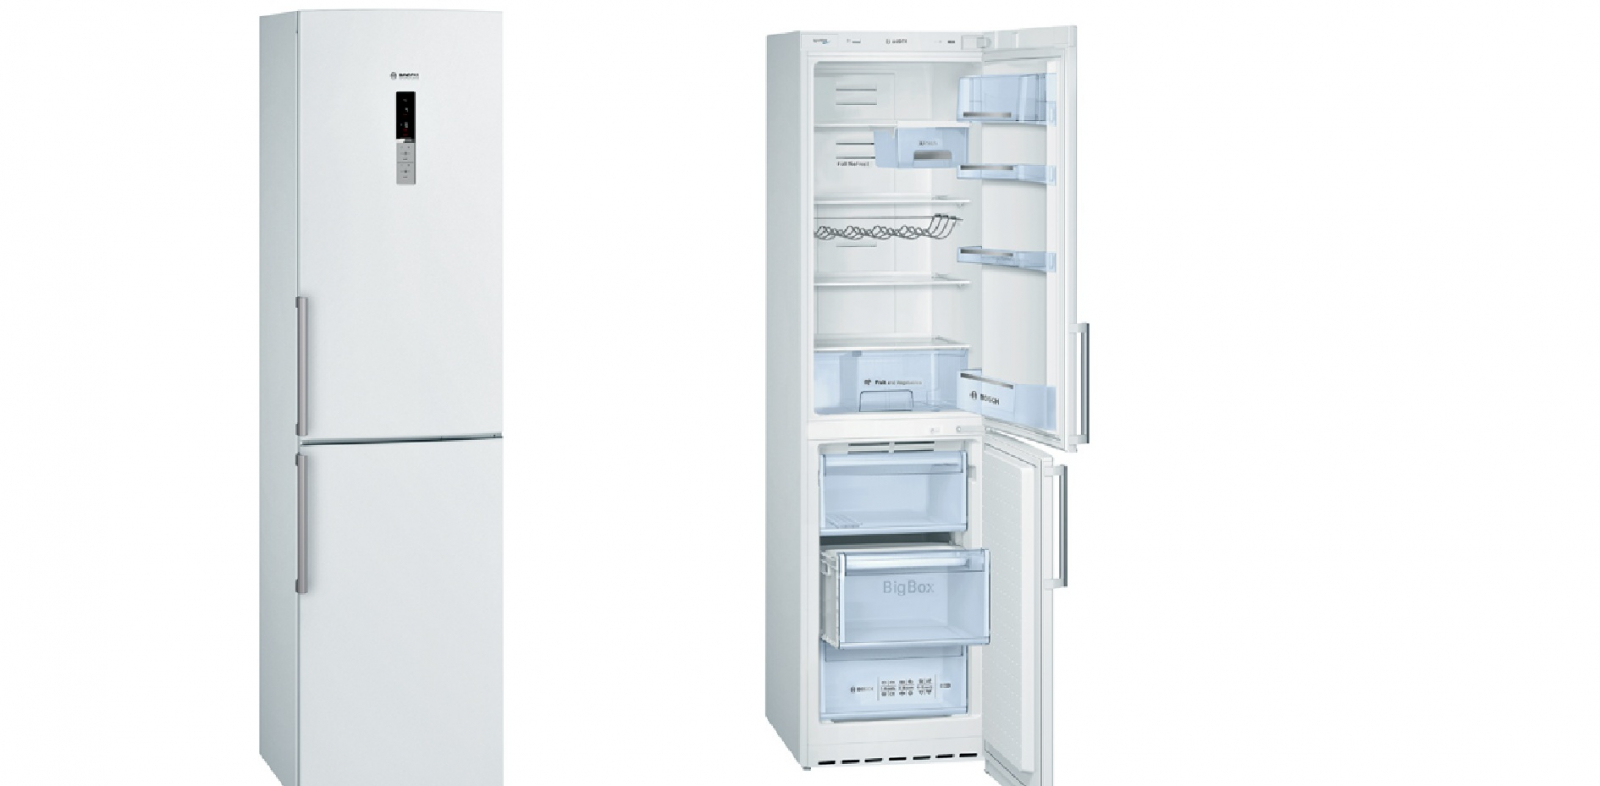 холодильник bosch kgn39xw25r, купить в Красноярске холодильник bosch kgn39xw25r,  купить в Красноярске дешево холодильник bosch kgn39xw25r, купить в Красноярске минимальной цене холодильник bosch kgn39xw25r